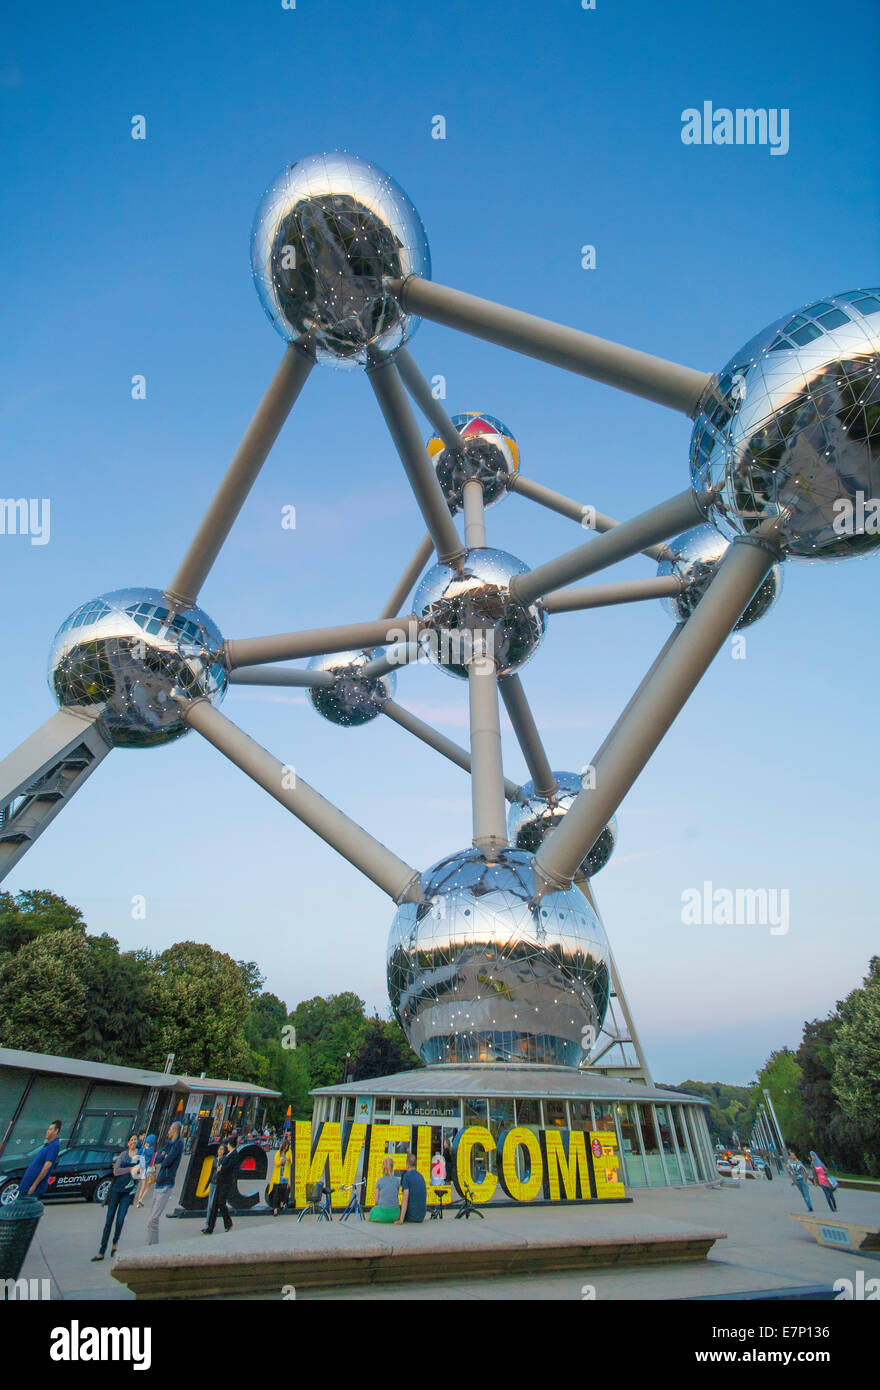 Atomium, sphères, Belgique, Europe, Bruxelles, architecture, ballons, ville, expo, célèbre, touristique, voyage, bienvenue Banque D'Images